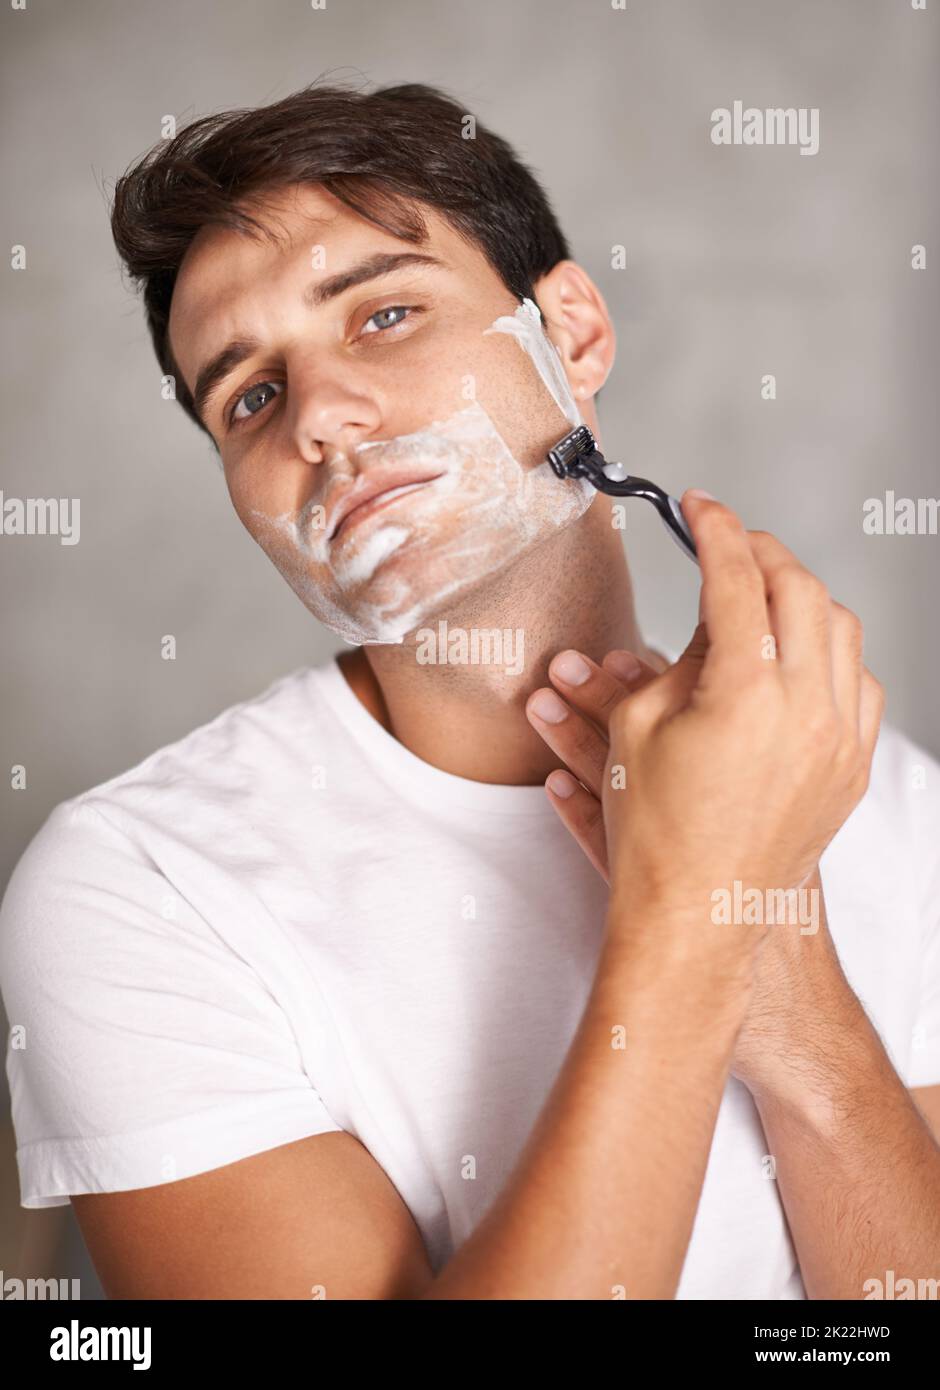 Afeitado de la cara maquinilla de afeitar eléctrica corte rastrojo facial  por afeitadora barba de hombre proceso de afeitado tipo sin afeitar barba  recortar hombre cara de afeitar de cerca hombre cortando